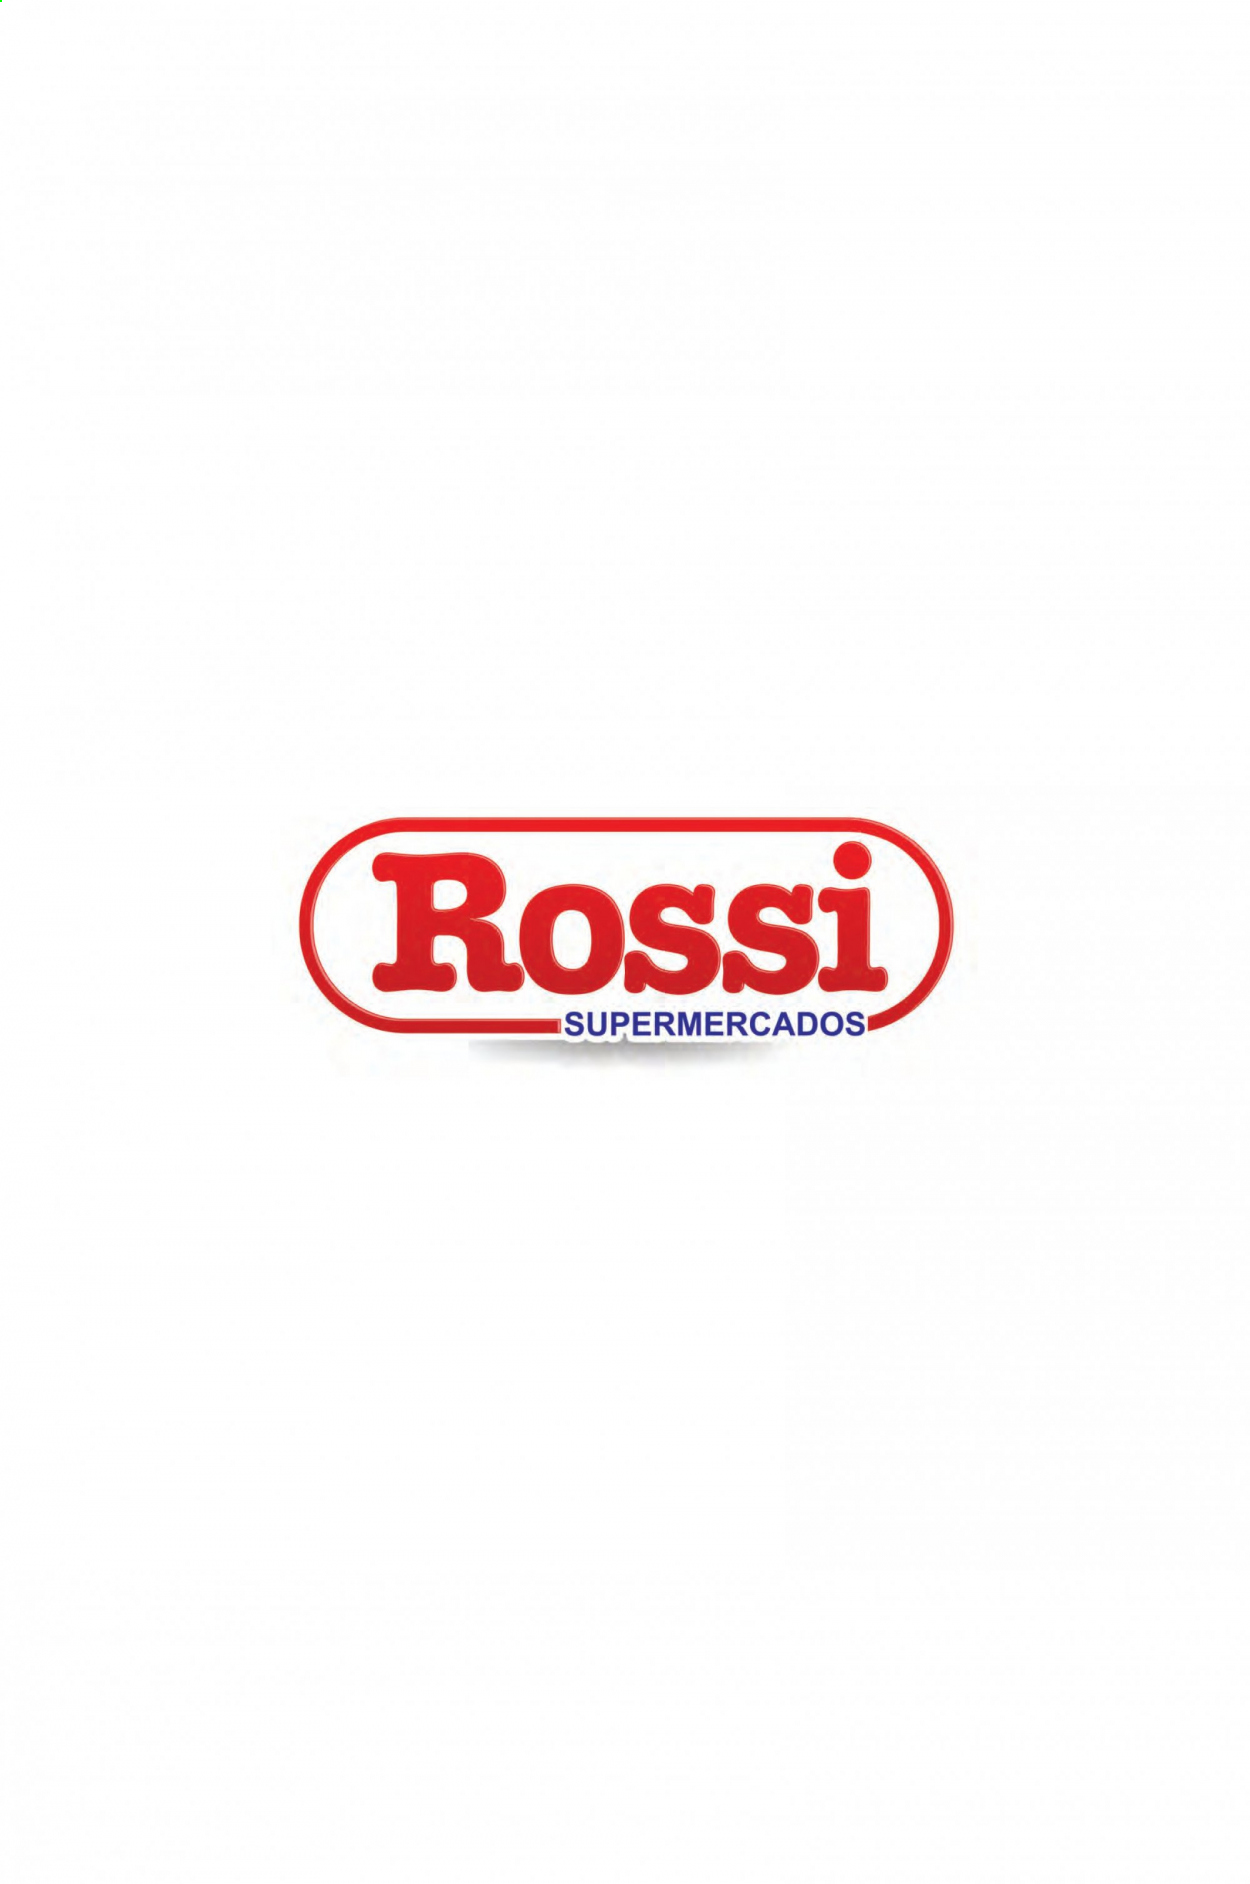 Encarte Rossi Supermercados  - 19.02.2021 - 23.02.2021.